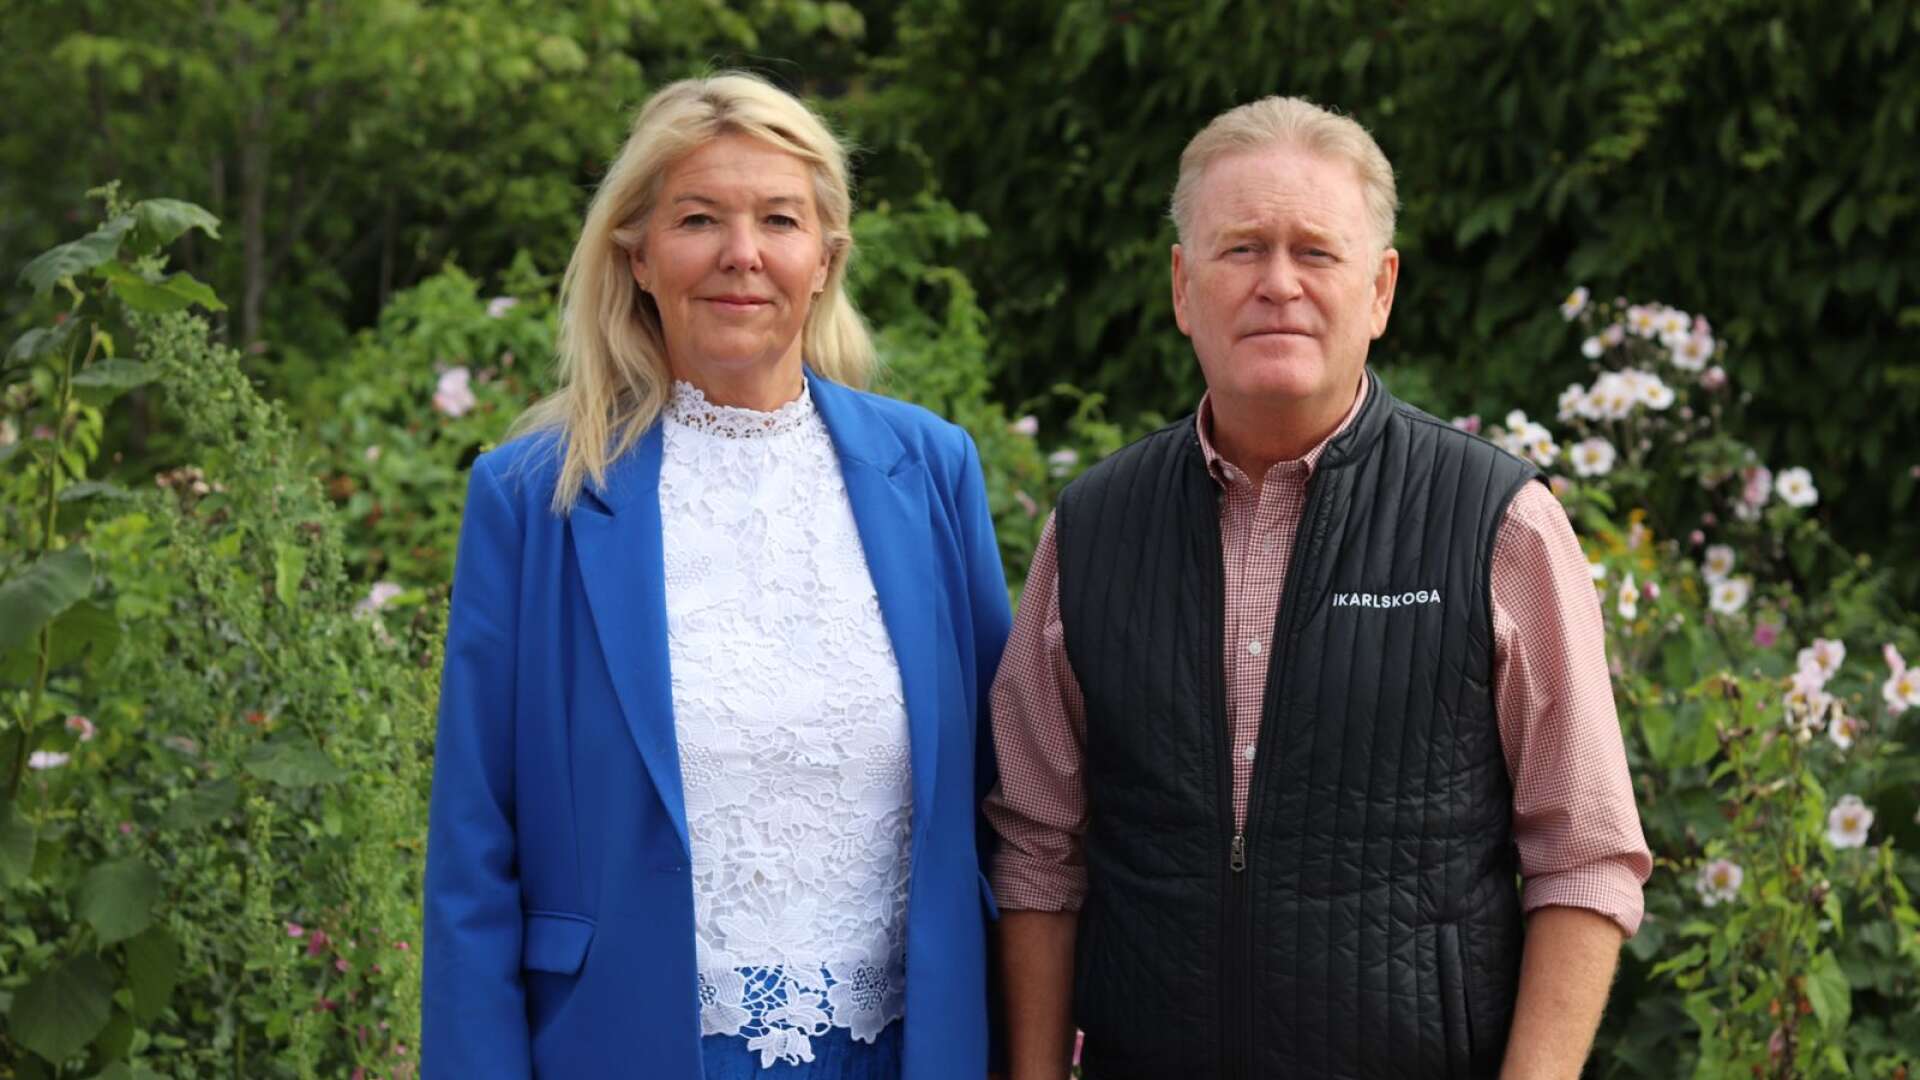 Anna Ragén (M) och Tony Ring (M) lyfter fram klagomål mot regionens behandling av Karlskogas ambulansverksamhet.